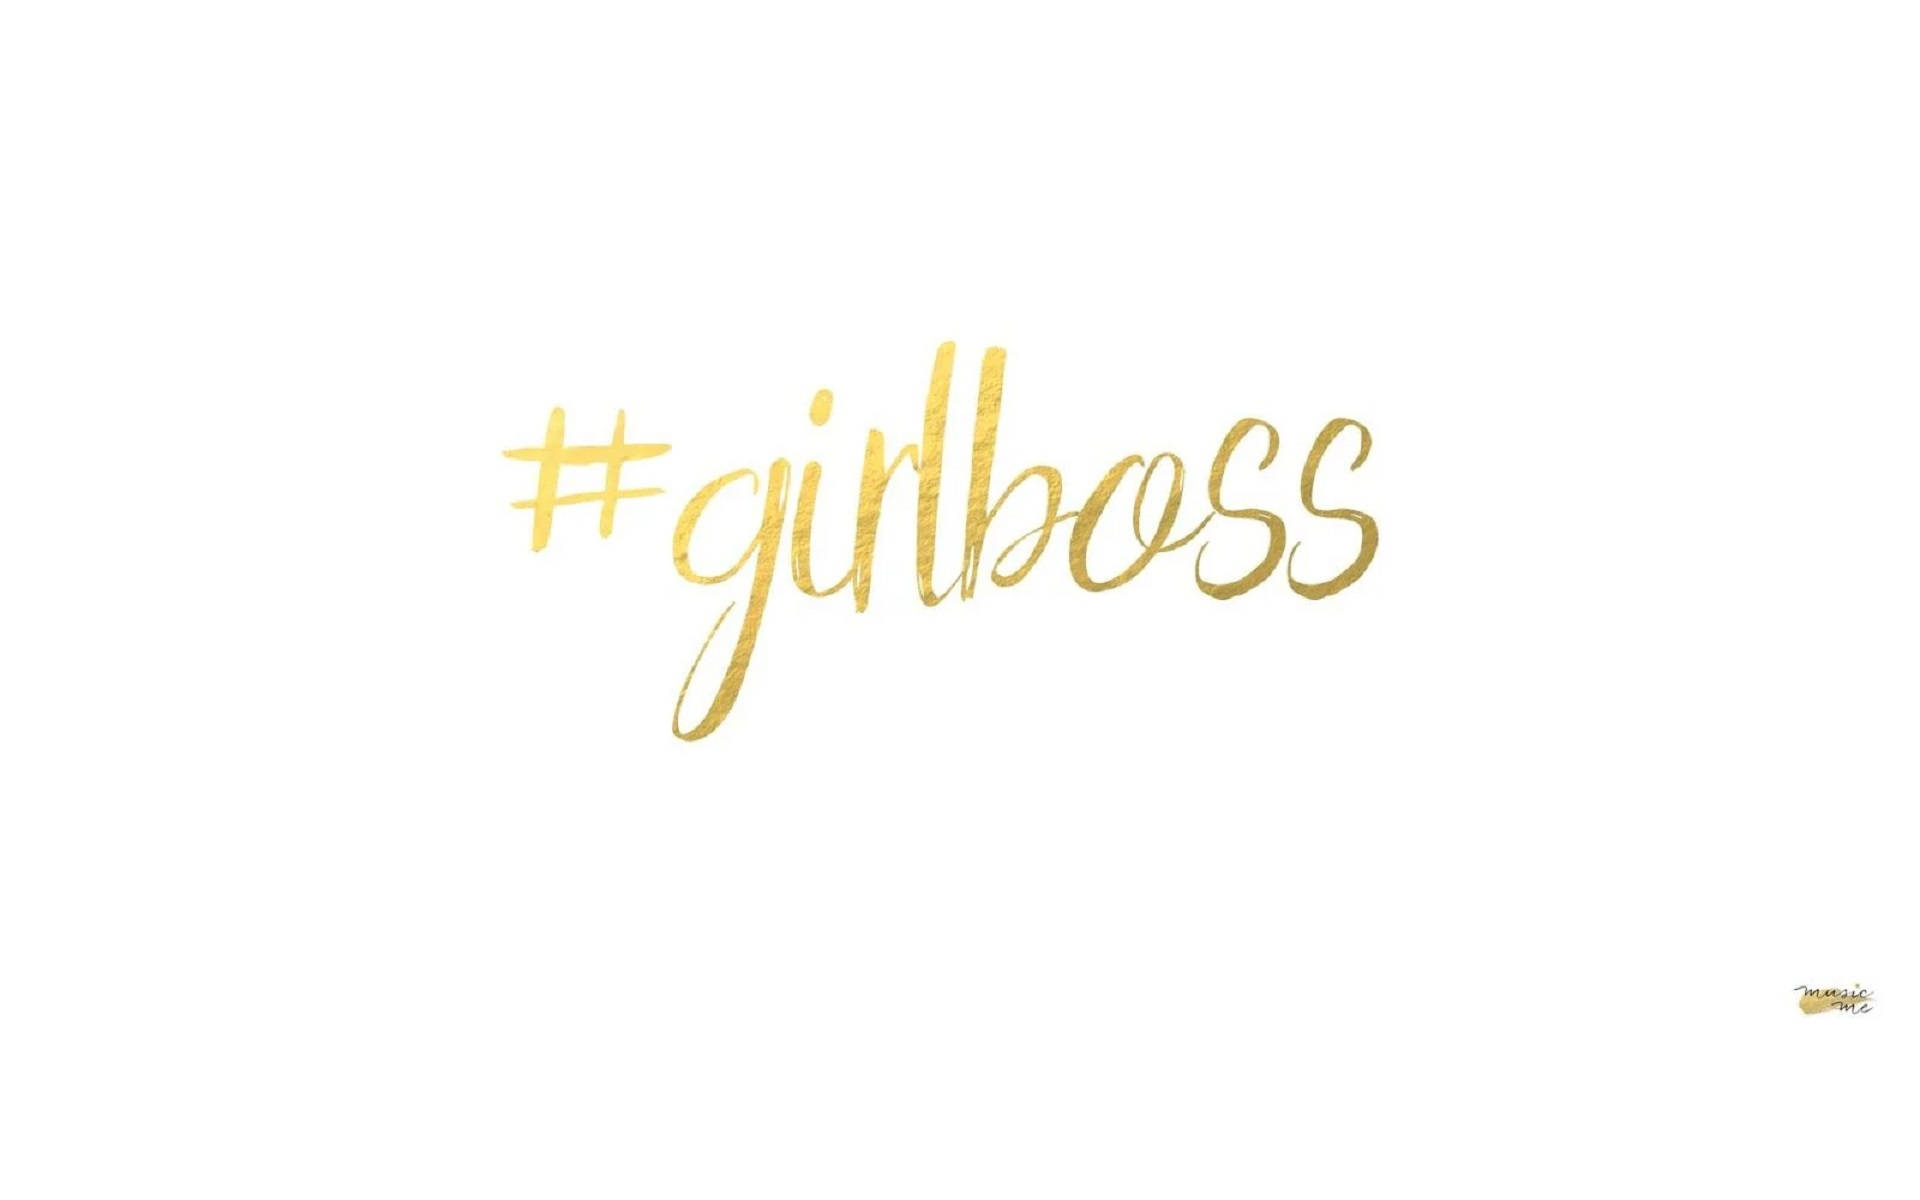 Hashtag Girl Boss In White